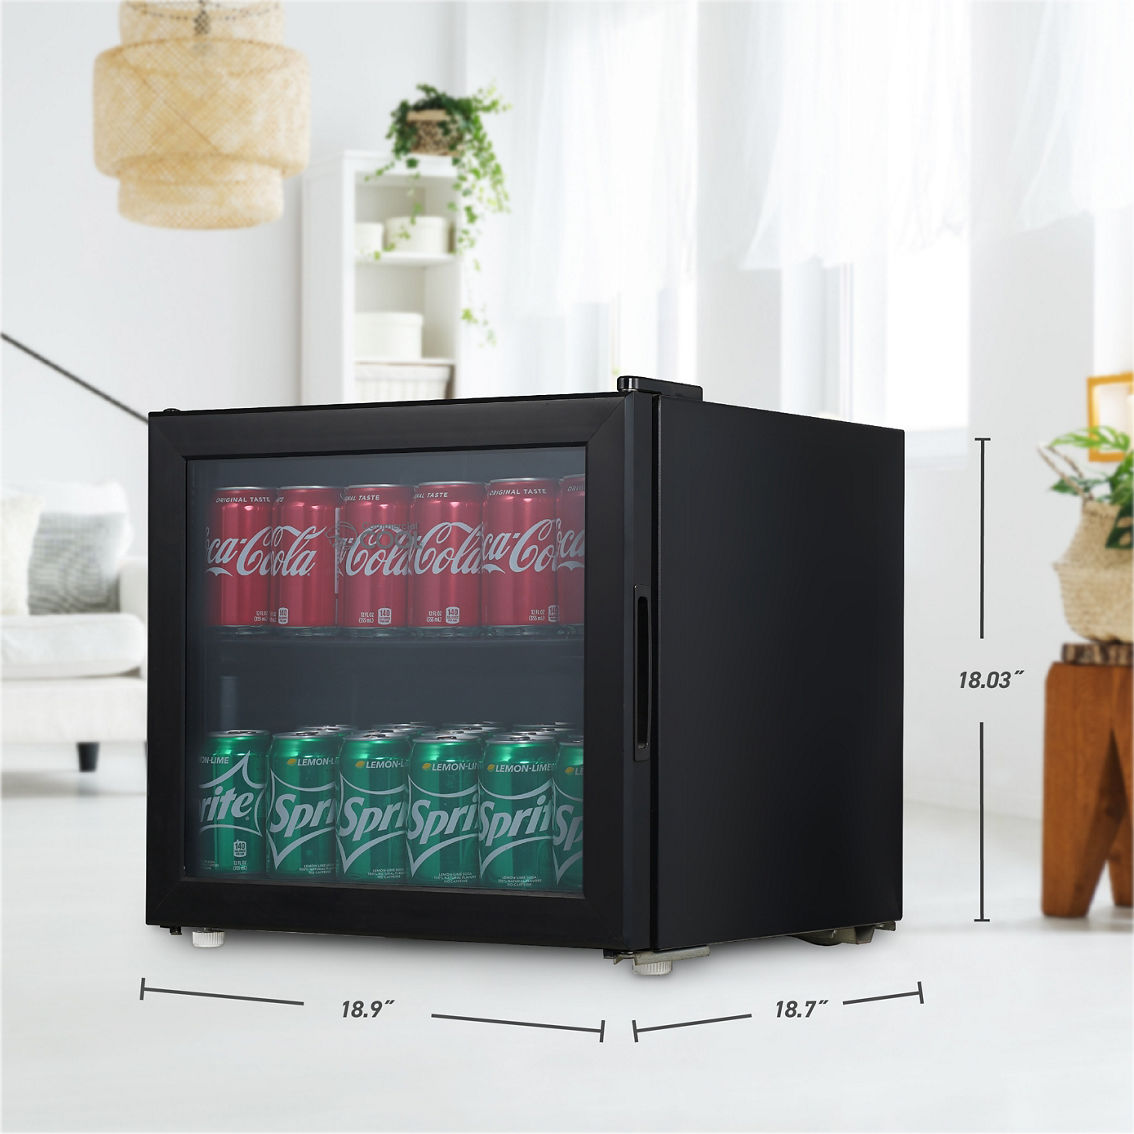 Commercial Cool 1.7 cu. ft. Beverage Cooler - Image 5 of 7